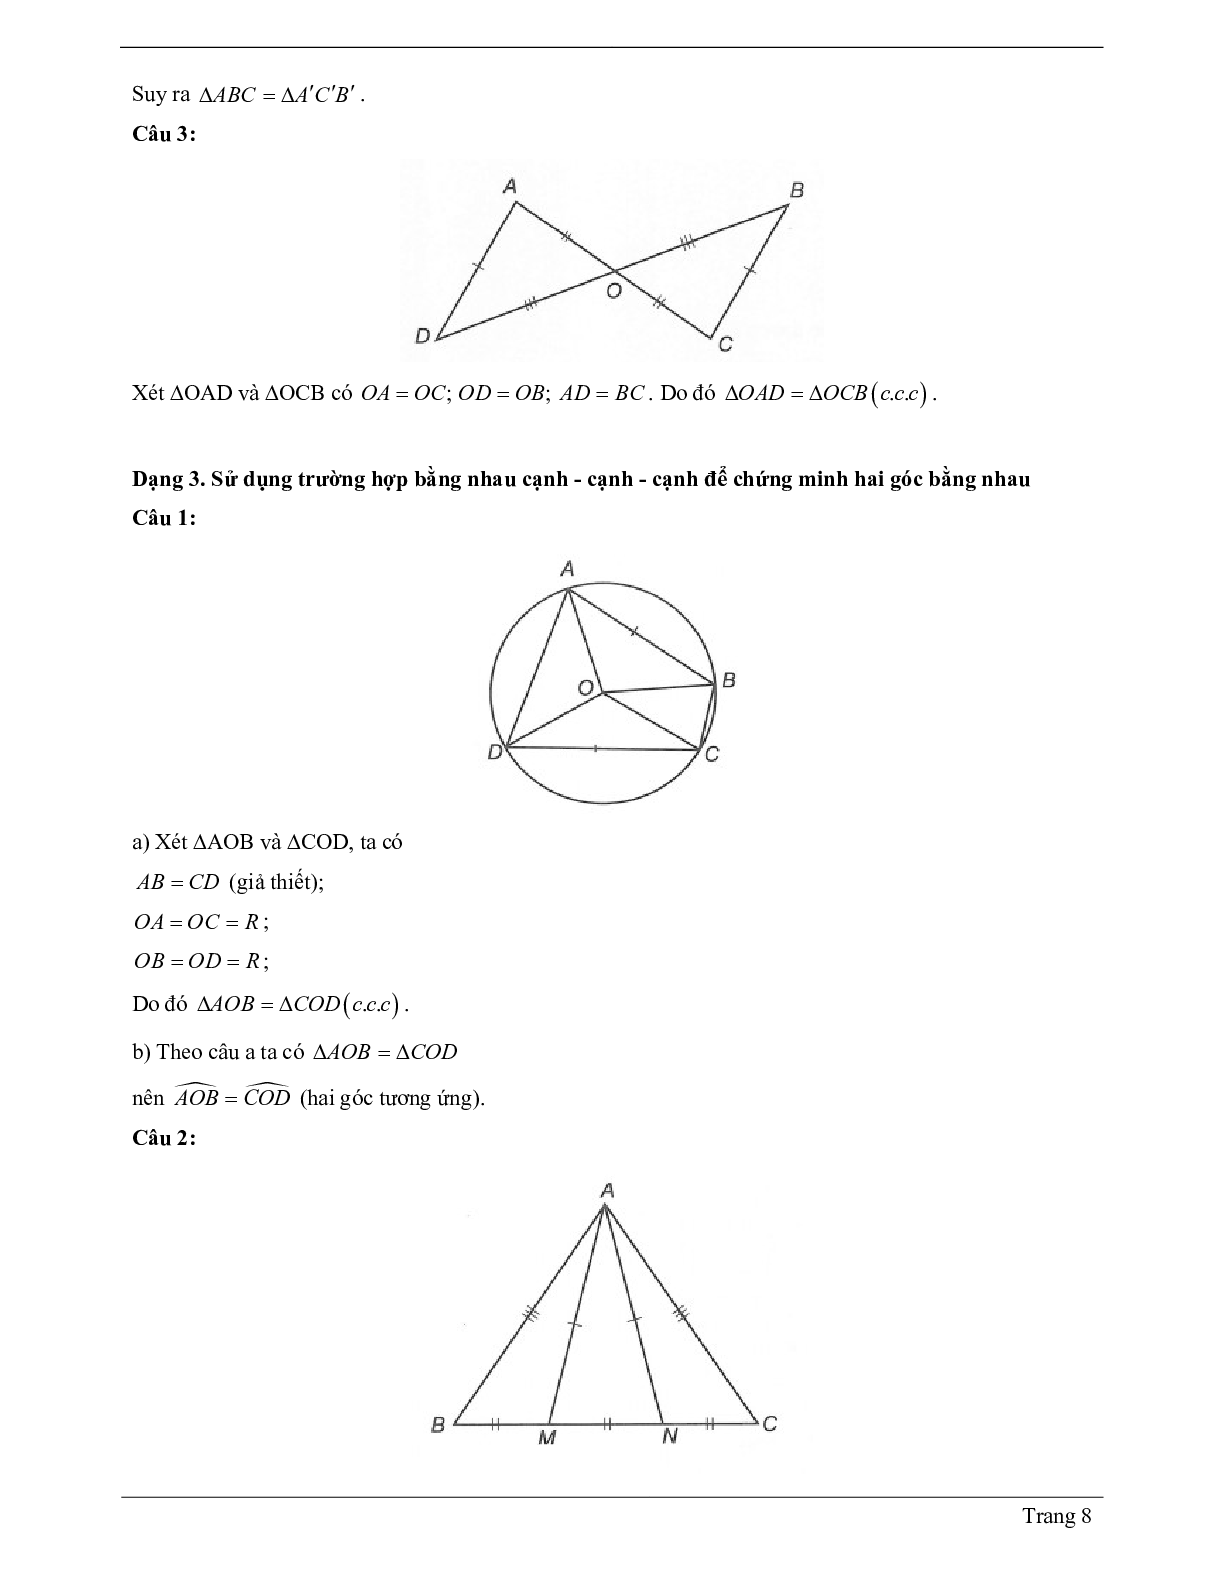 Lý thuyết Toán 7 có đáp án: Trường hợp bằng nhau thứ nhất của tam giác: cạnh - cạnh - canh (c.c.c) (trang 8)